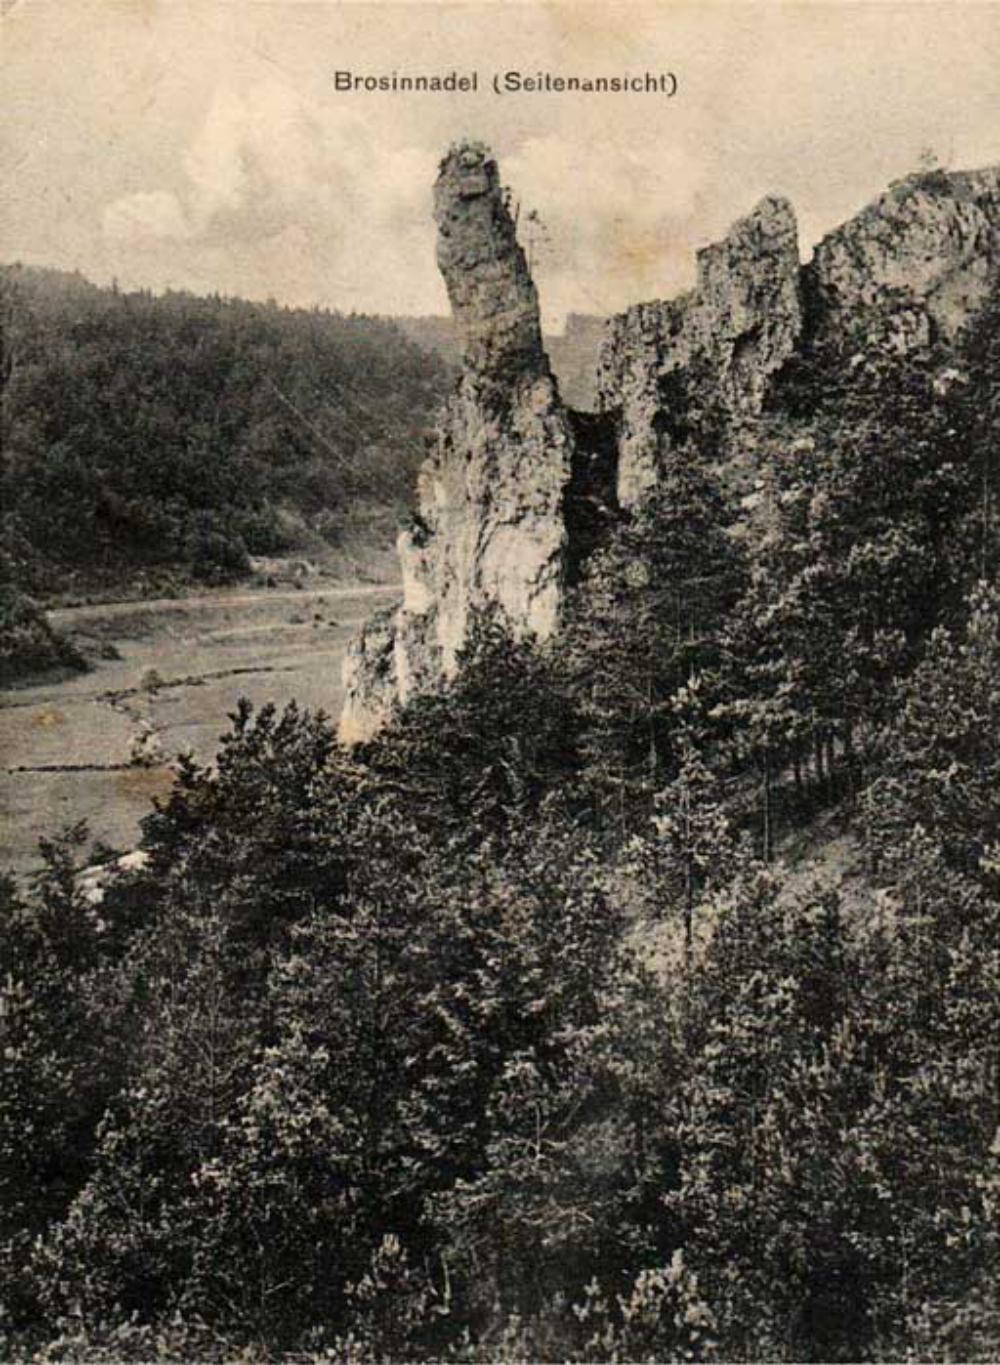 Abb. 1: Die Brosinnadel im Lehenhammertal, benannt nach ihrem Erstbesteiger Fritz Brosin, im Jahr 1910. Auf dem Gipfel des Felsens befindet sich eine Personengruppe.